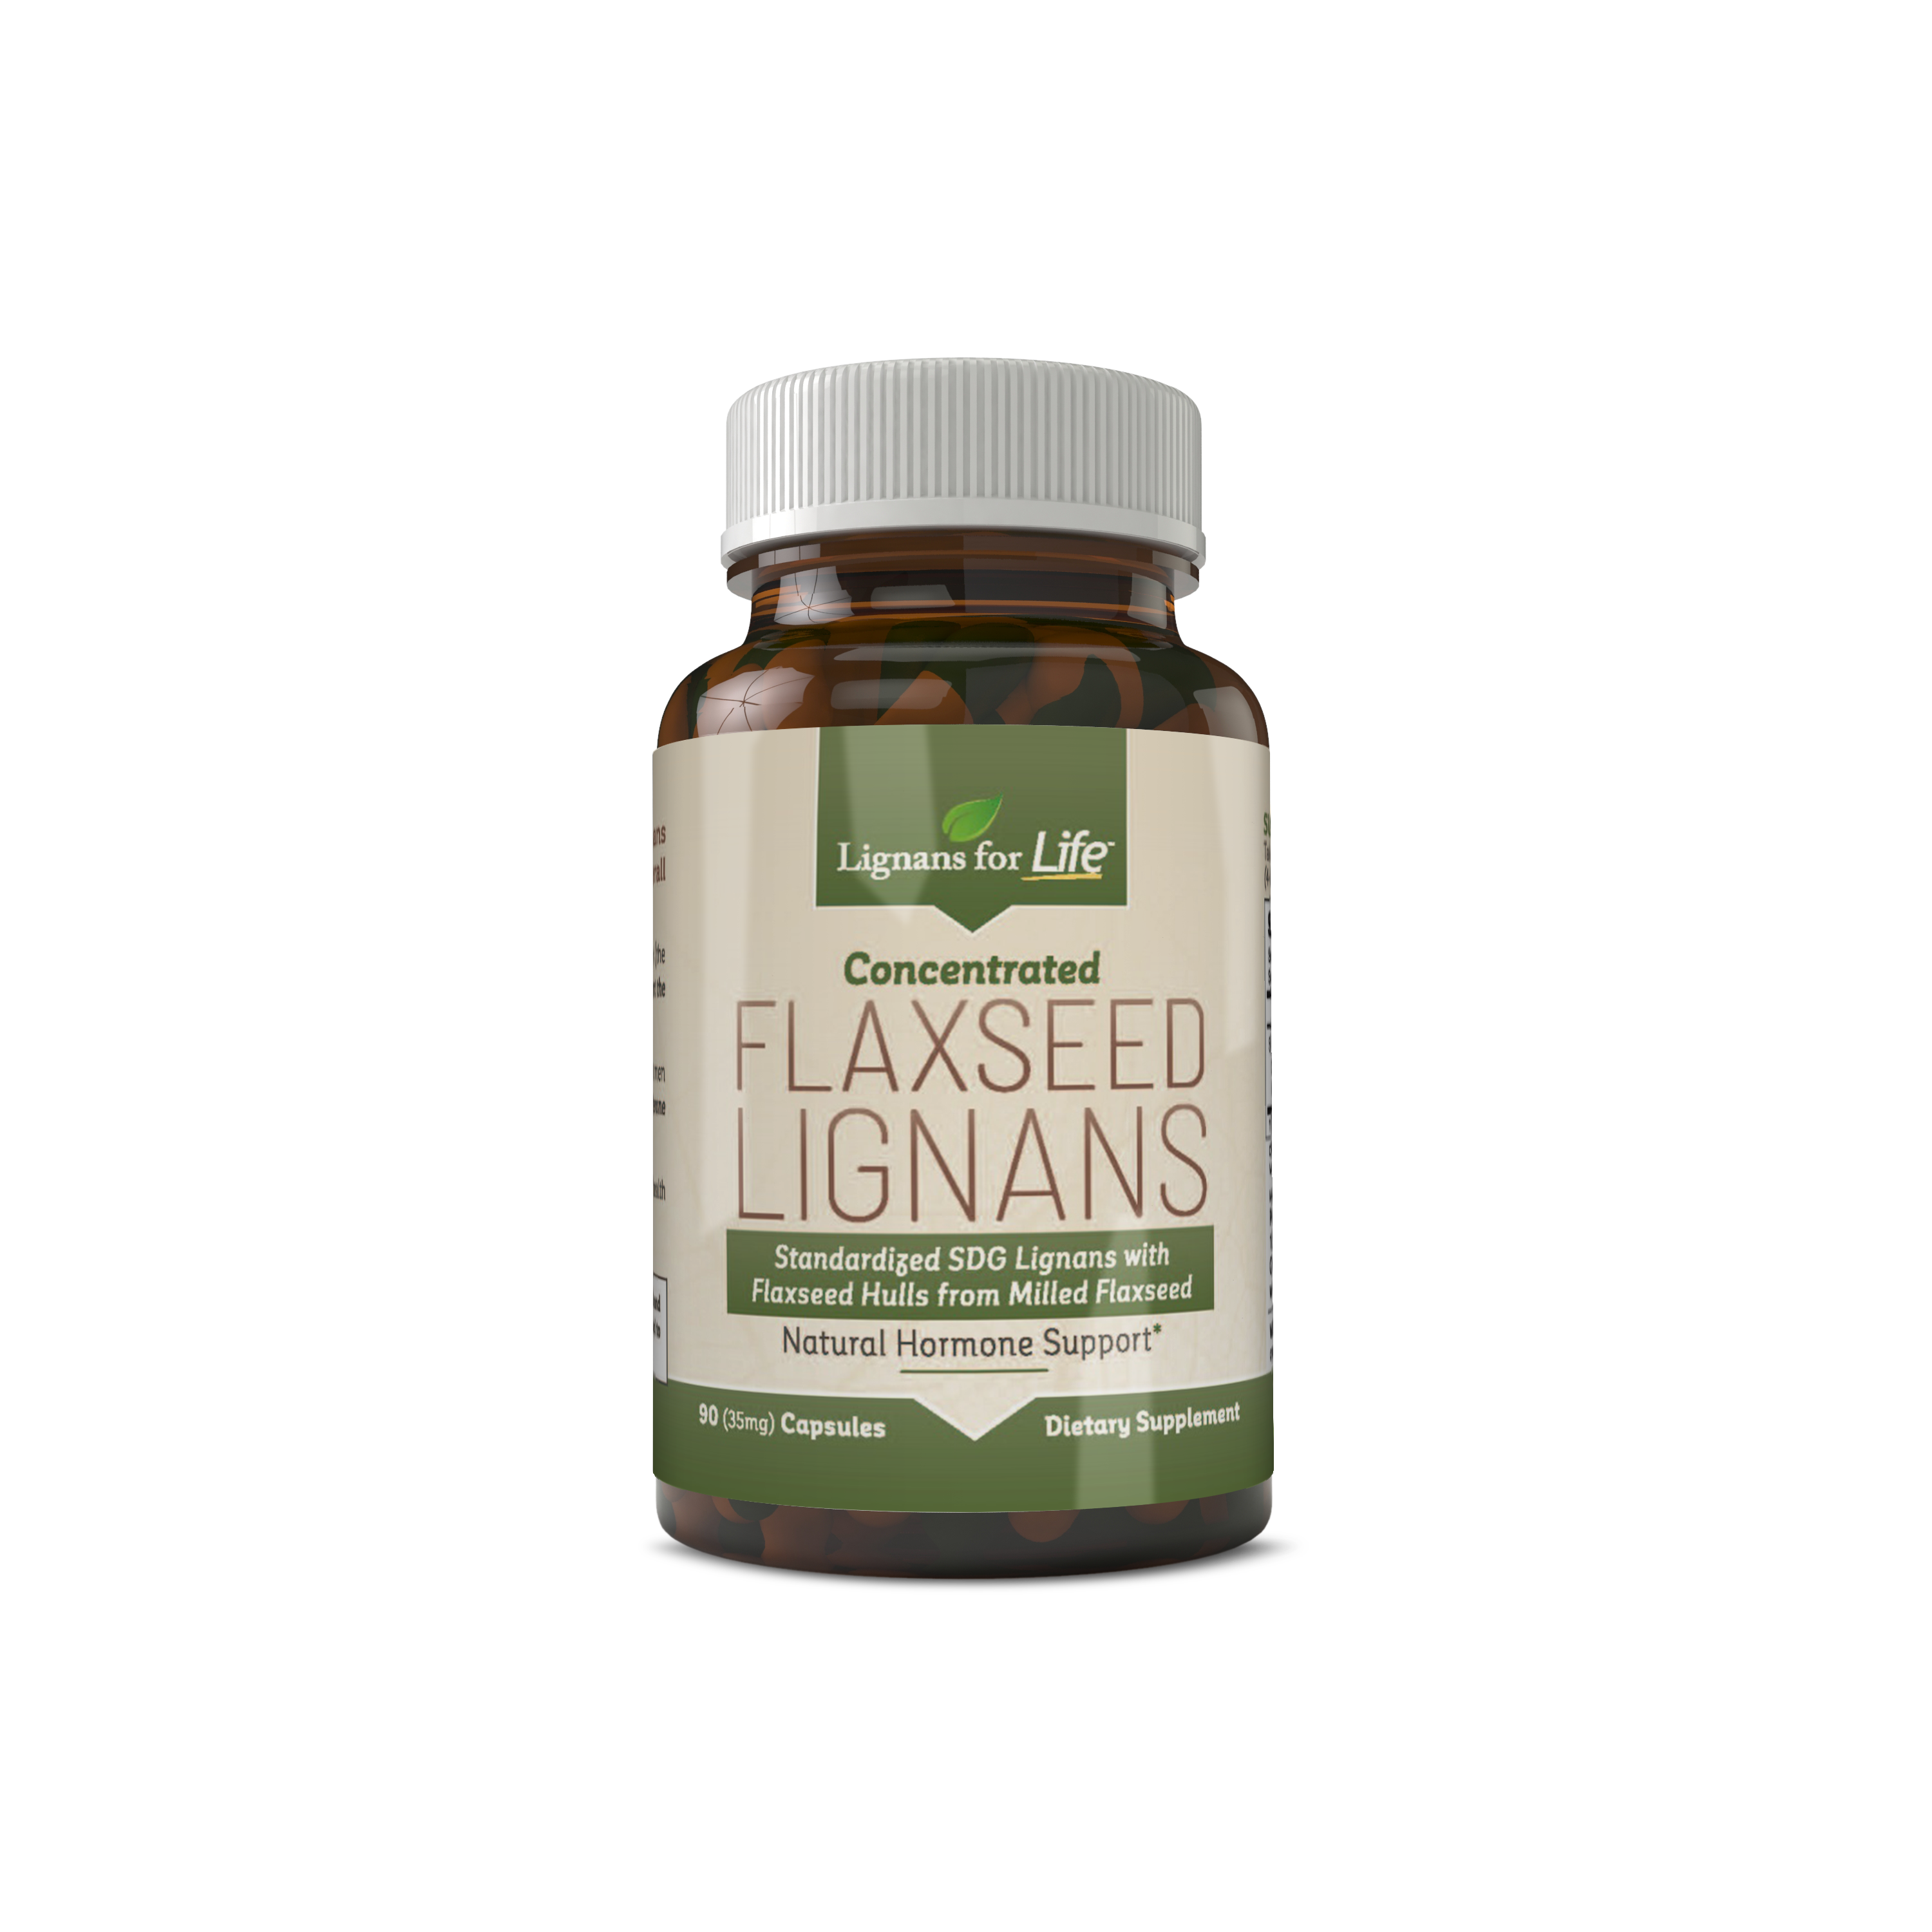 Flaxseed Lignans